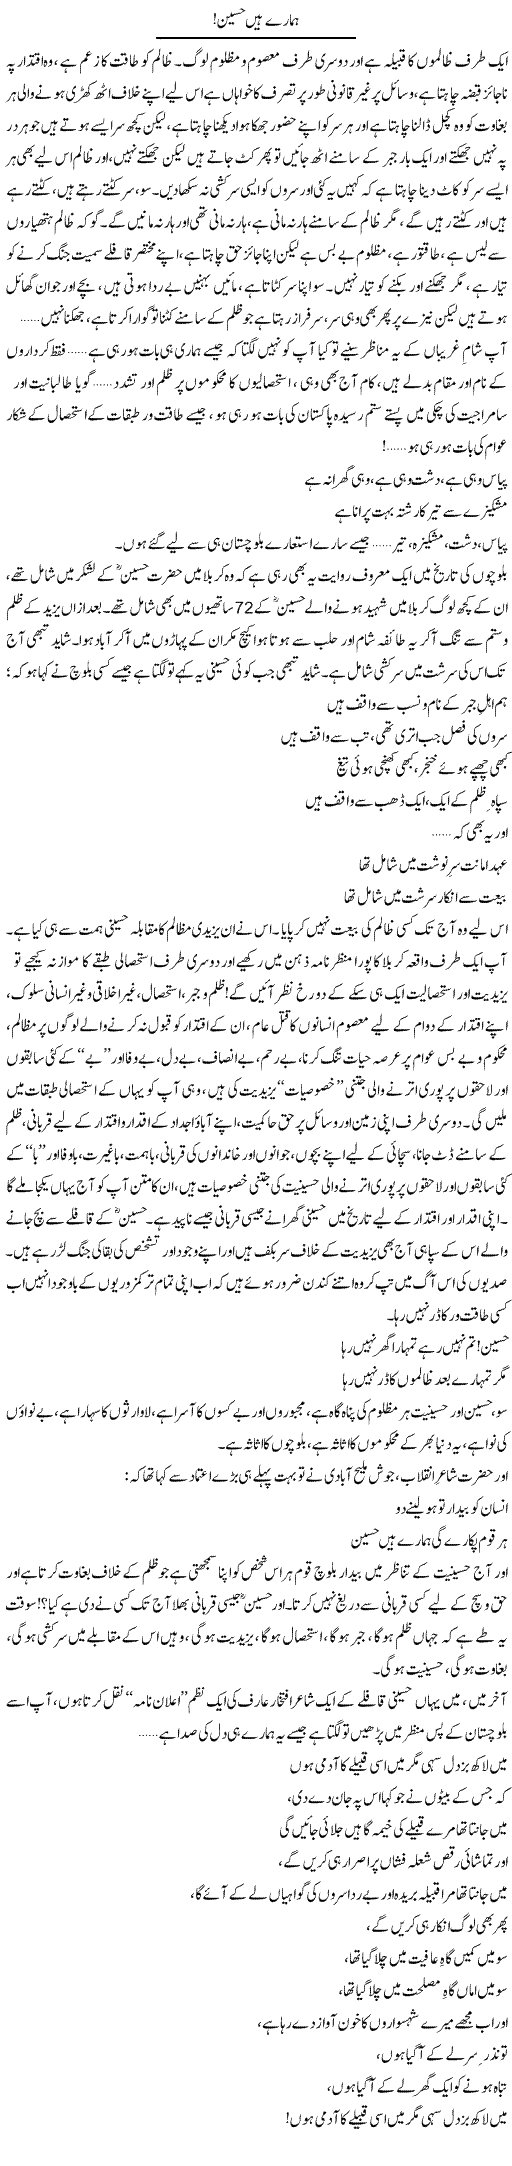 Hamare Hain Hussain A.S | Abid Mir | Daily Urdu Columns